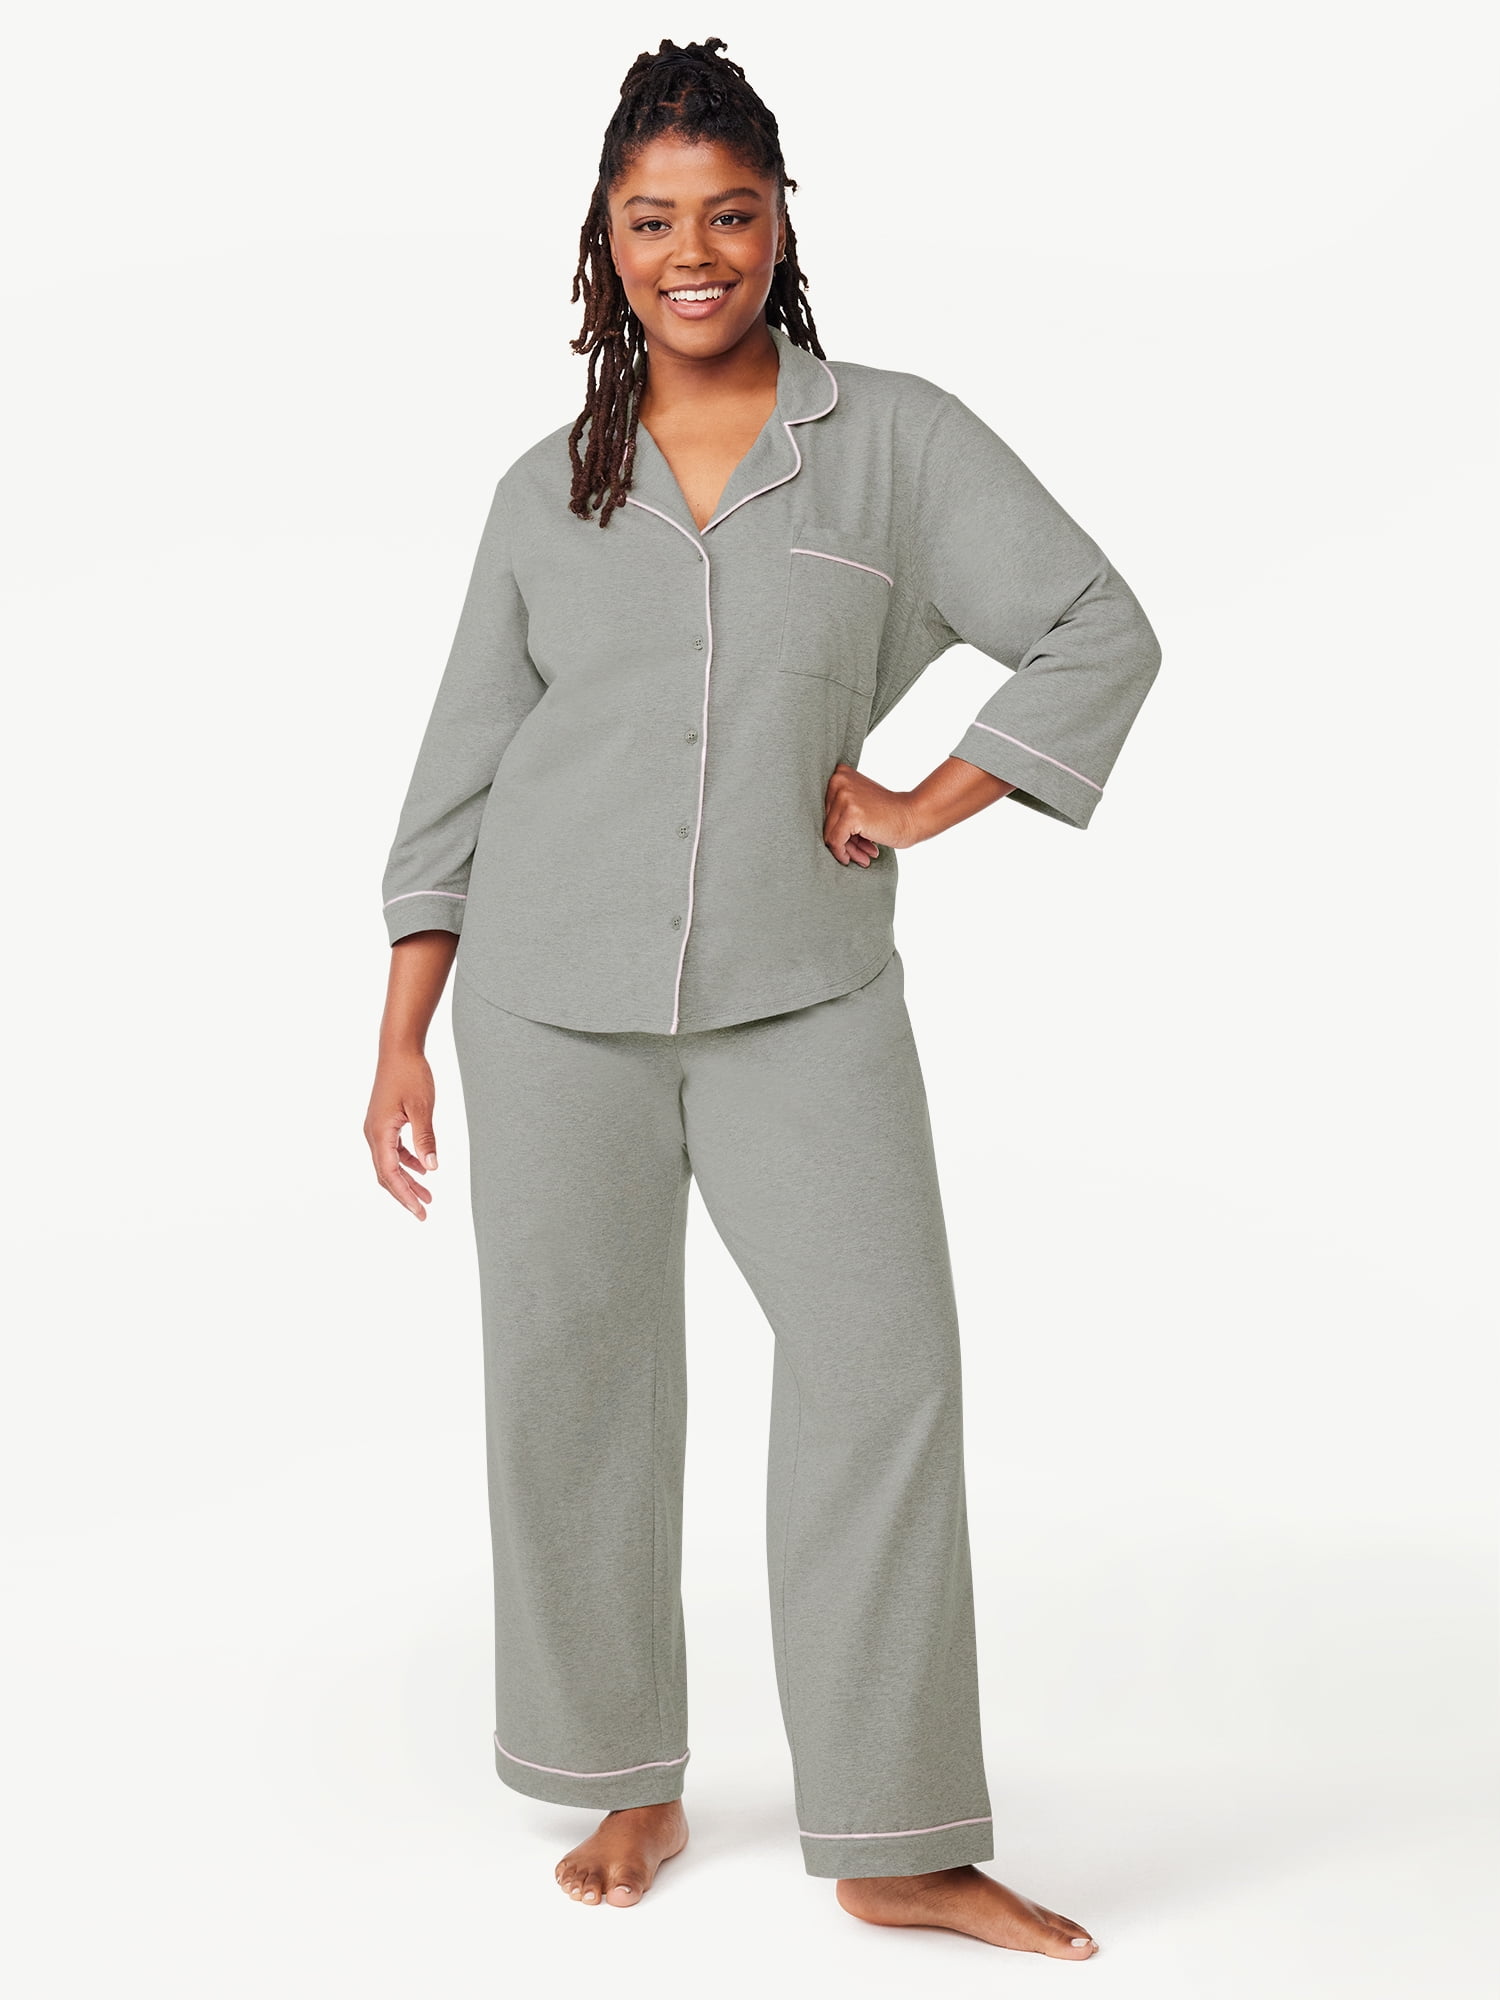 Joyspun Women’s Knit Notch Collar Top and Pants Pajama Set, 2-Piece ...